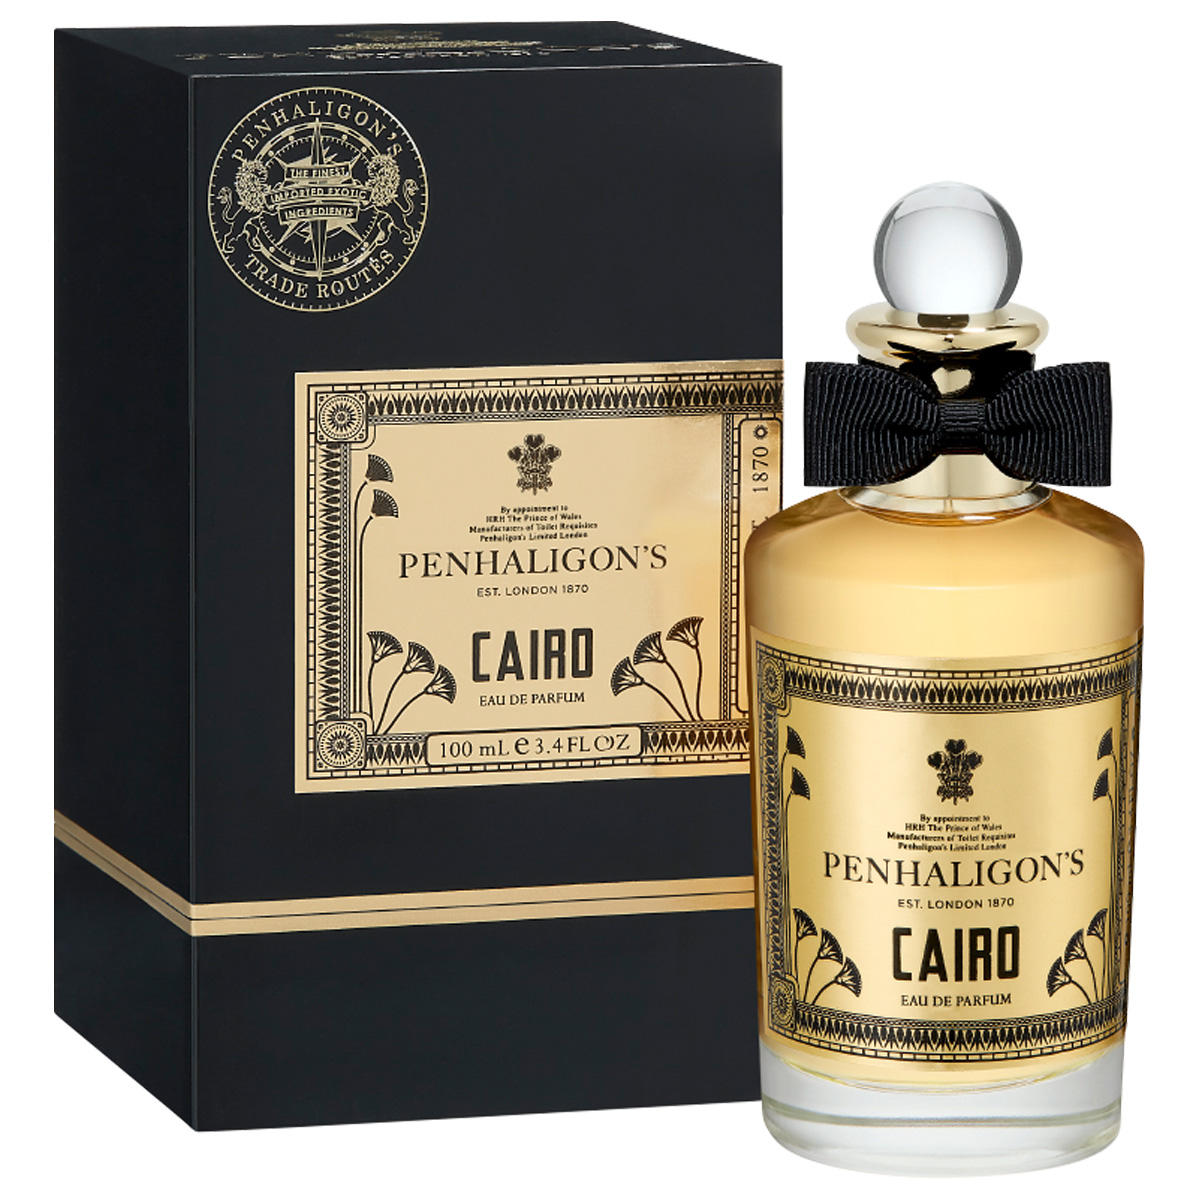 PENHALIGON'S Trade Routes Cairo Eau de Parfum 100 ml - 2